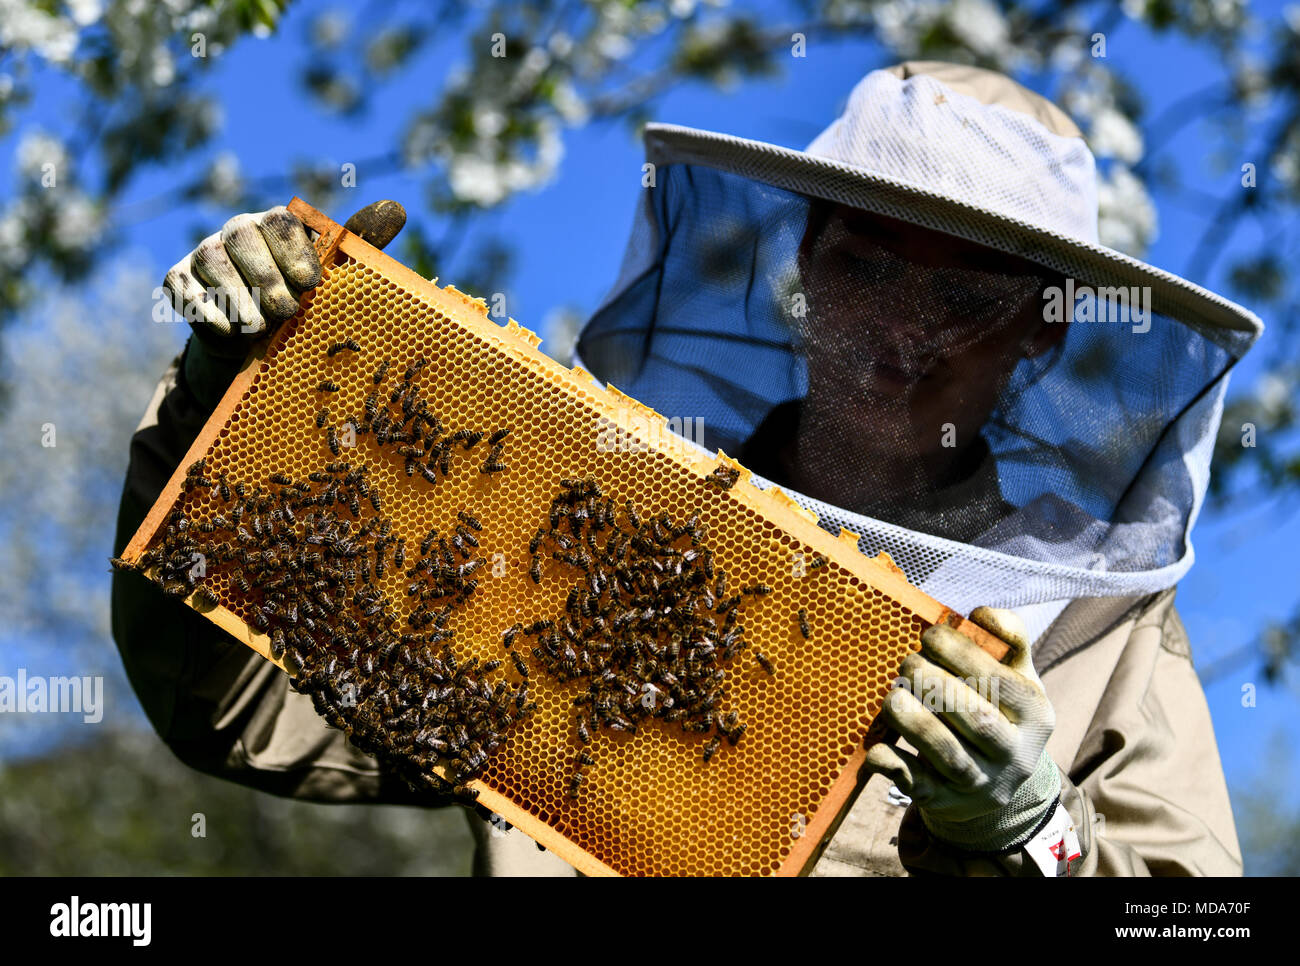 Пчелы гибнут. Пестициды и пчелы. Защита пчел от агрохимикатов. Исчезновение пчел. Пчеловодство вымерло.